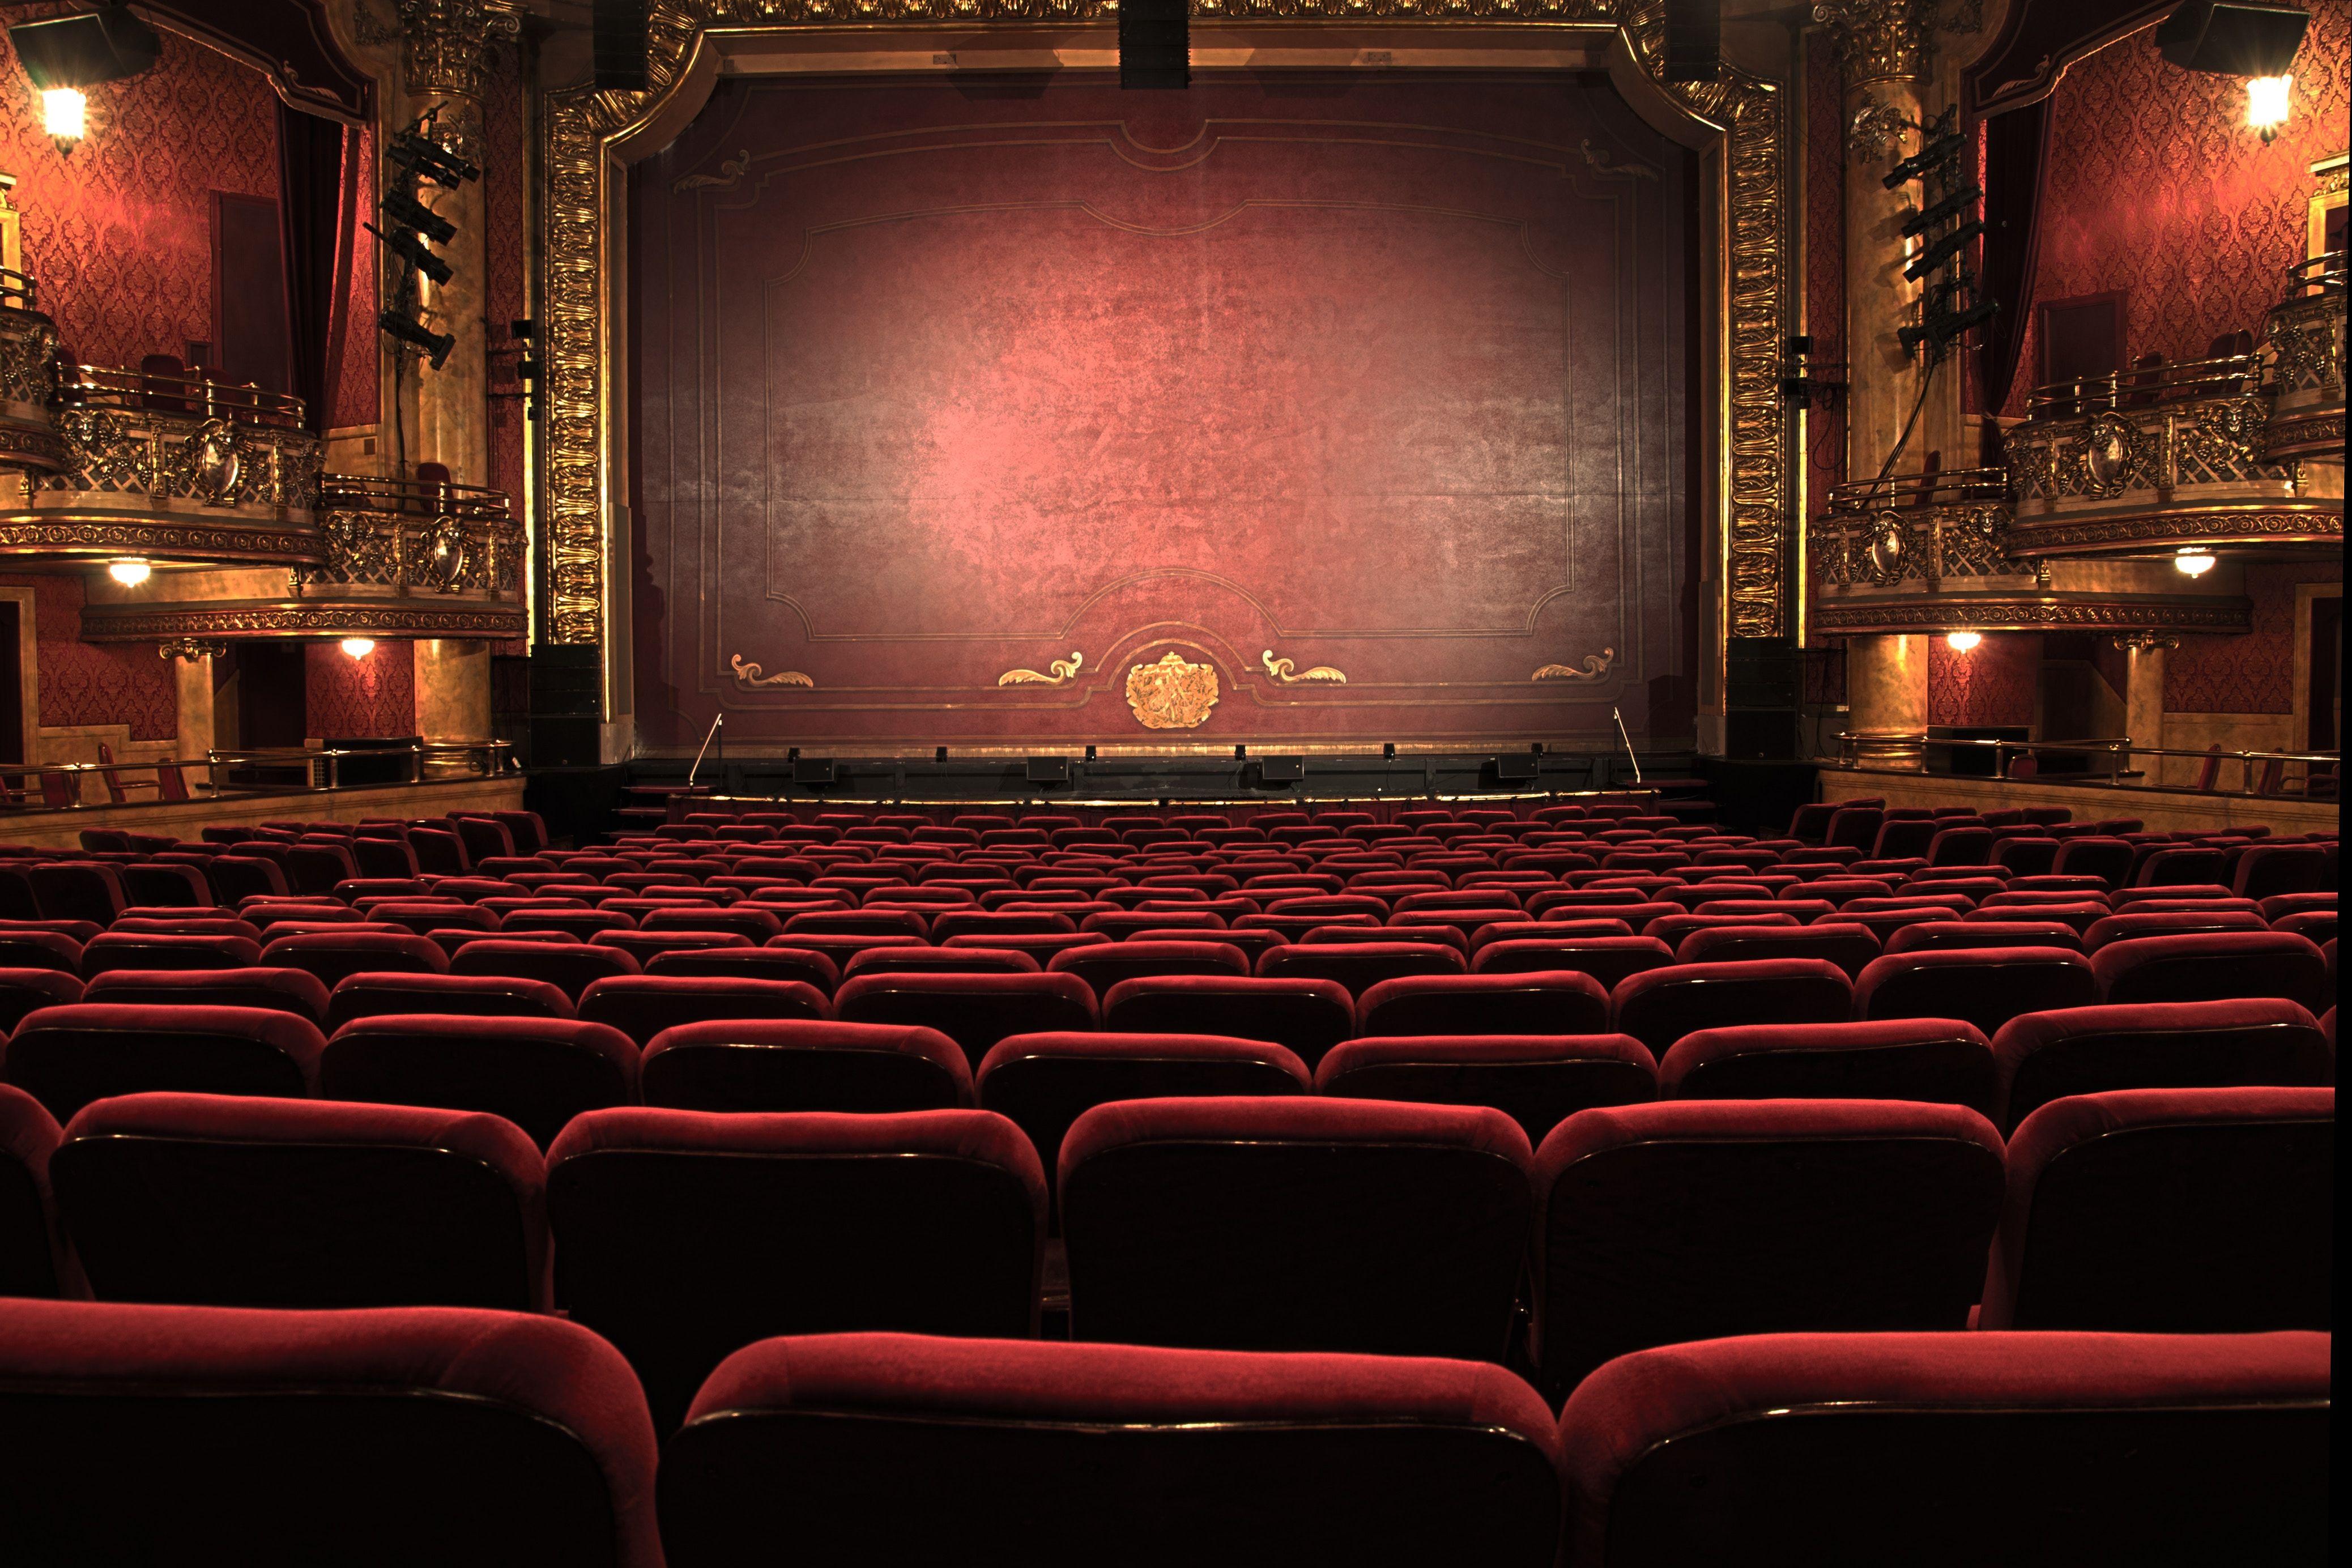 عکس زیبا از سالن تئاتر برای اجرای نمایش های تئاتری